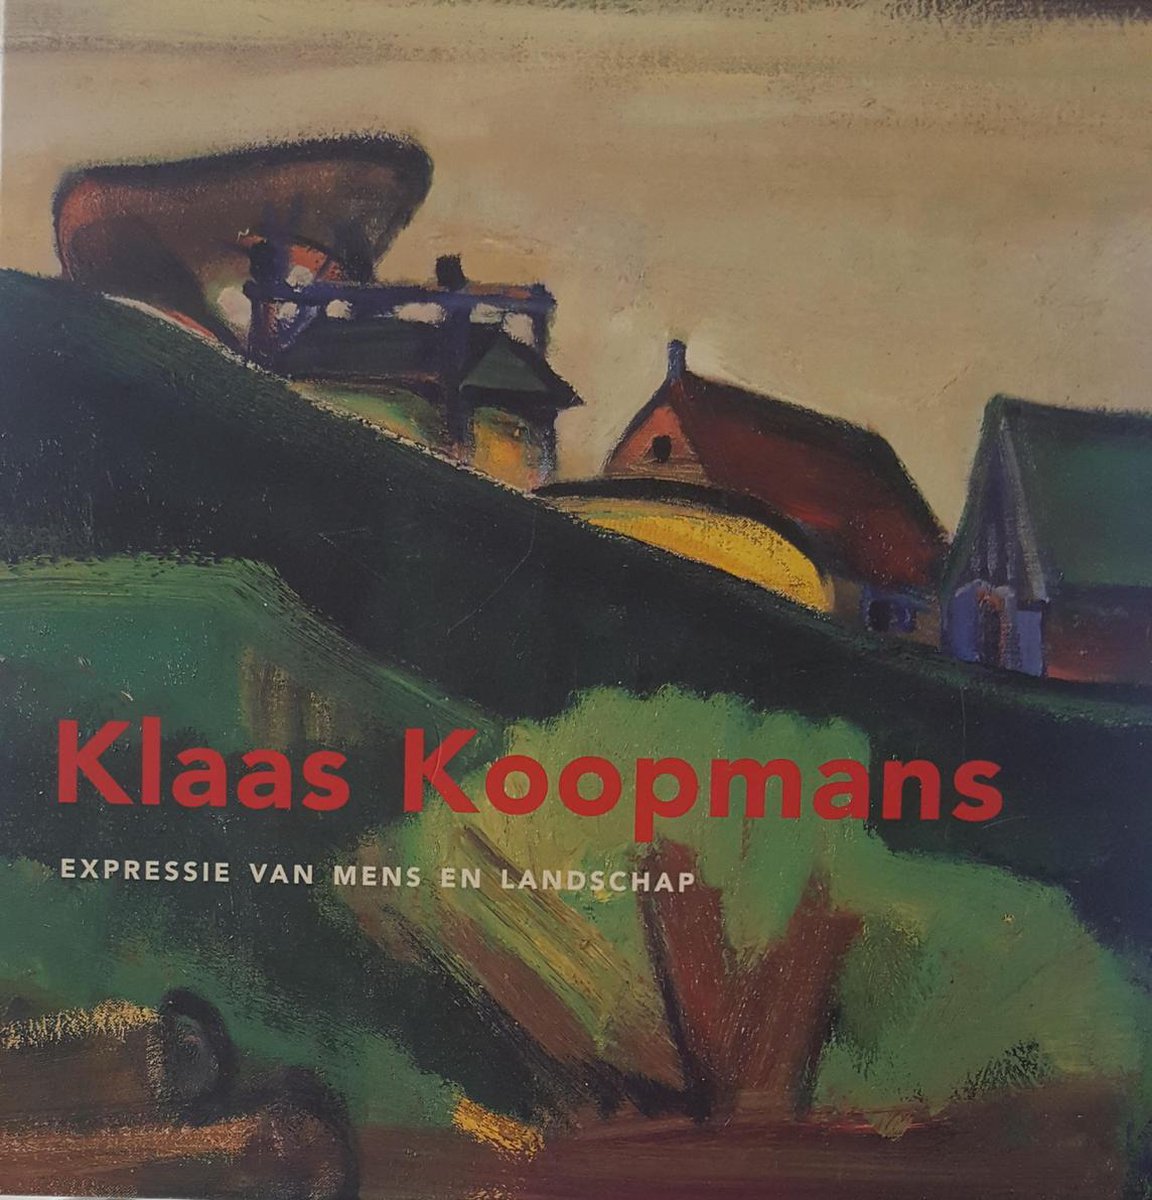 Klaas Koopmans